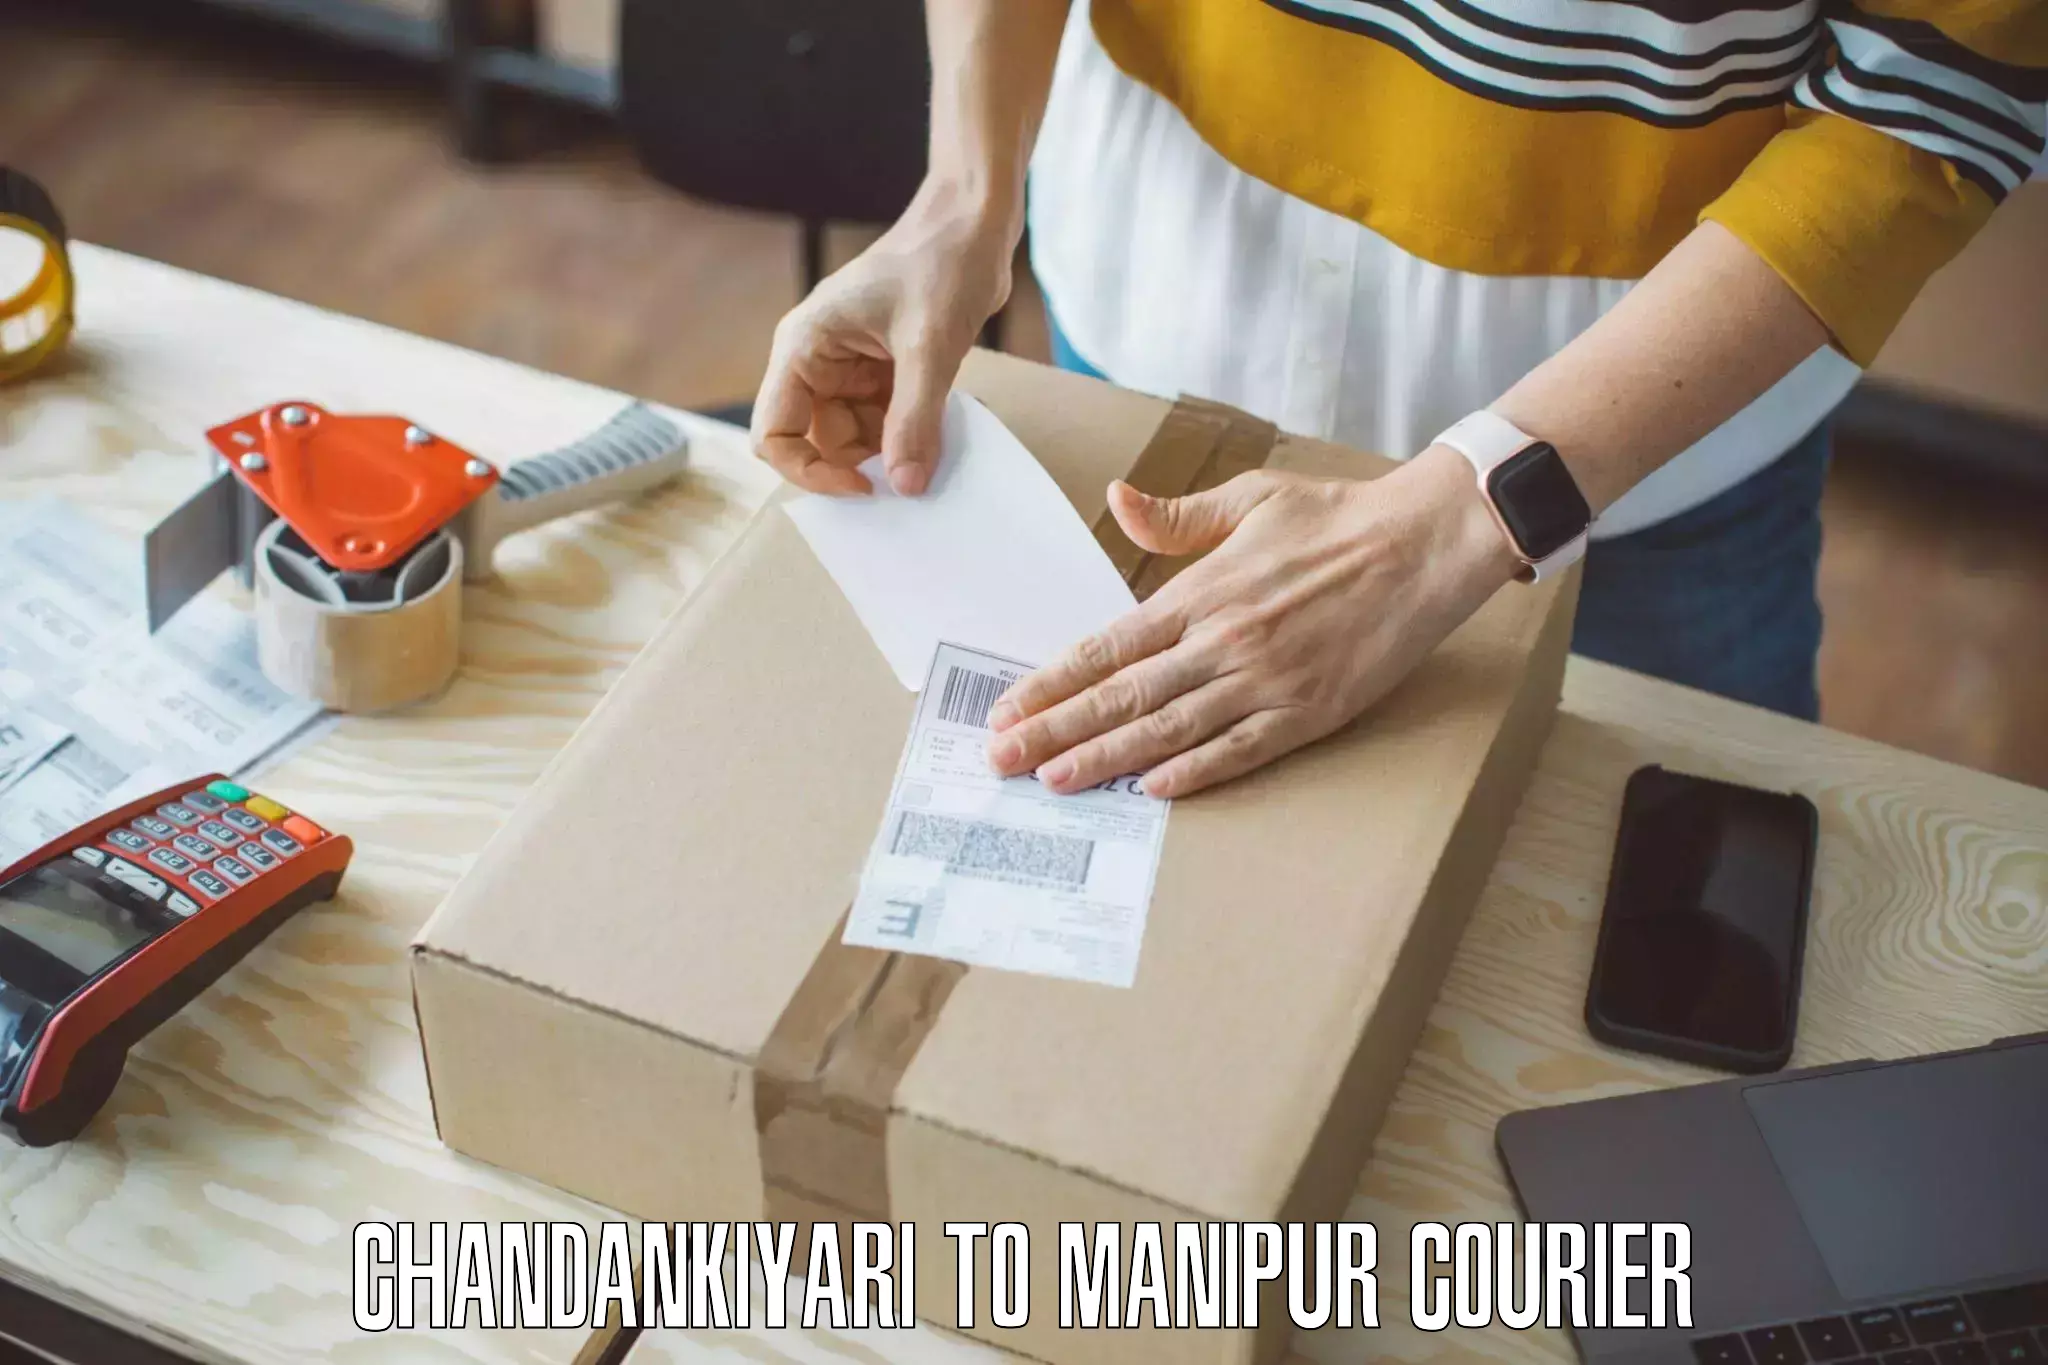 Furniture moving plans Chandankiyari to Manipur